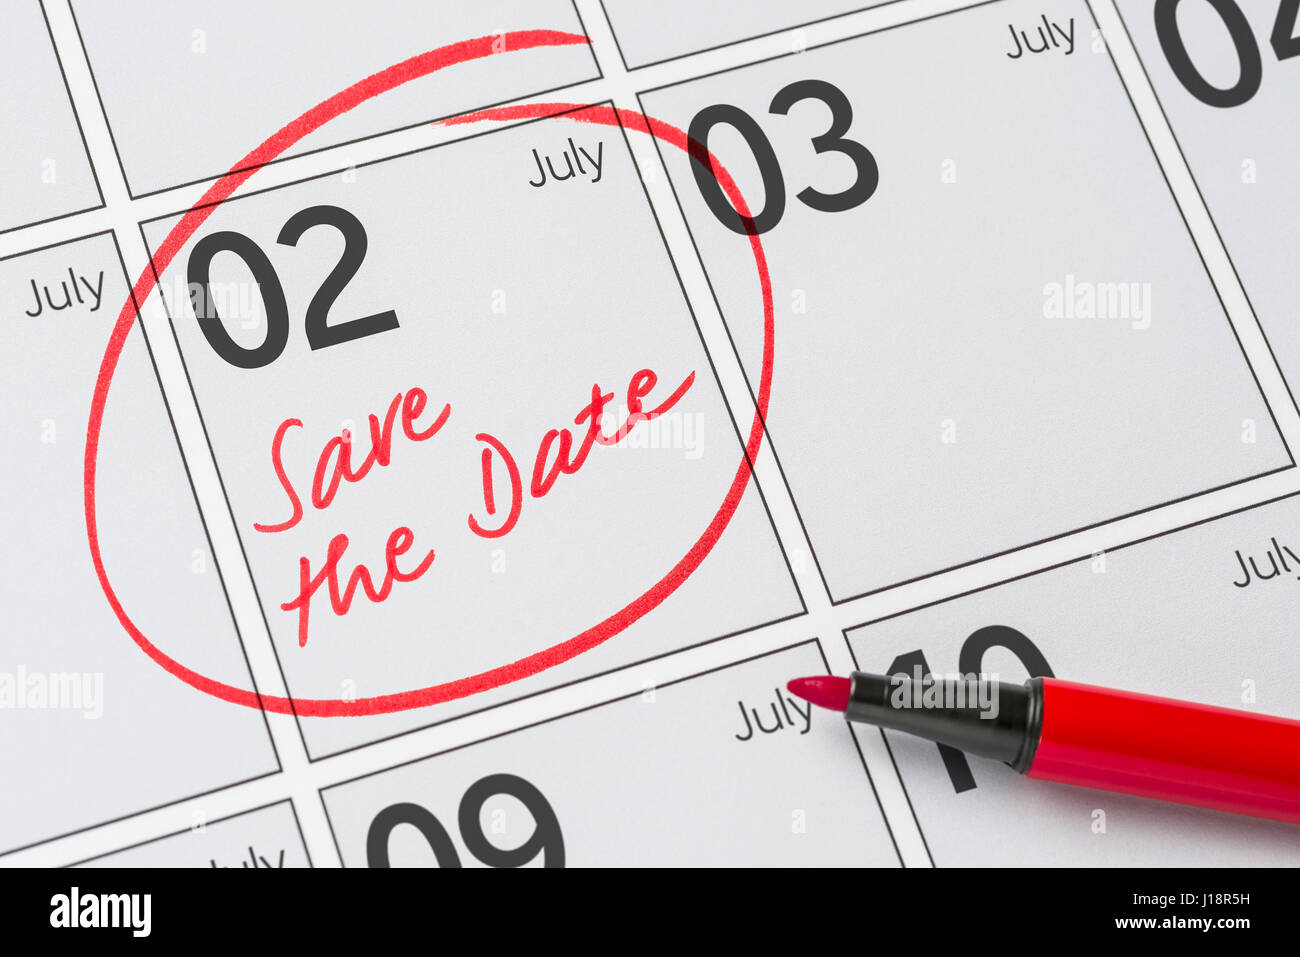 Enregistrer la date inscrite sur un calendrier - Juillet 02 Banque D'Images